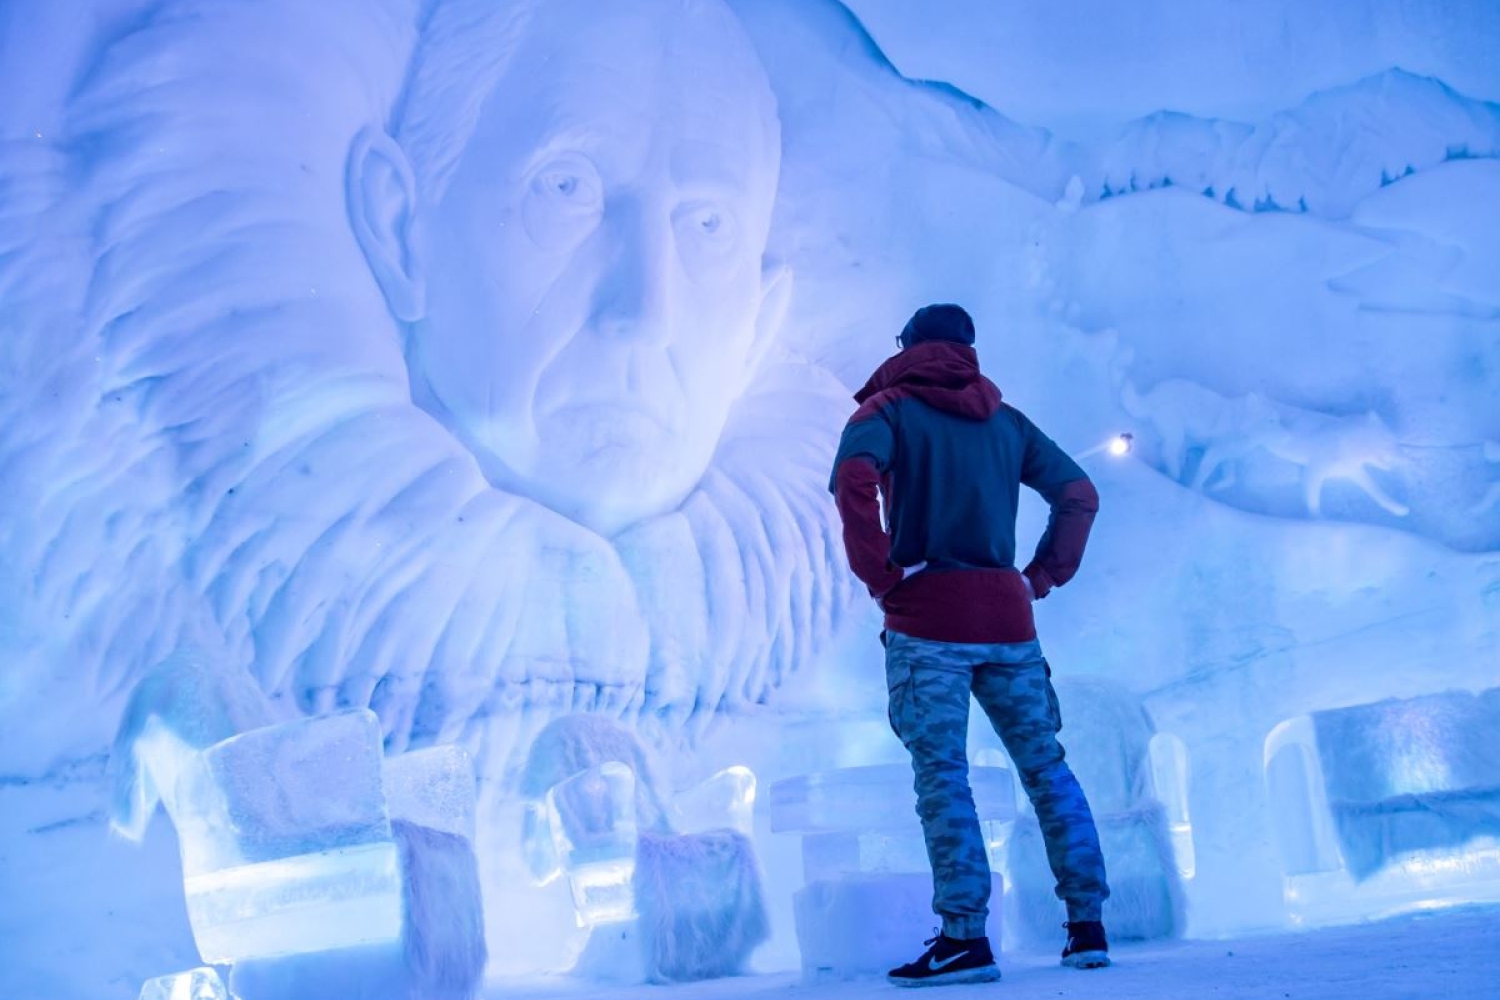 Mann ser på is skulpturene